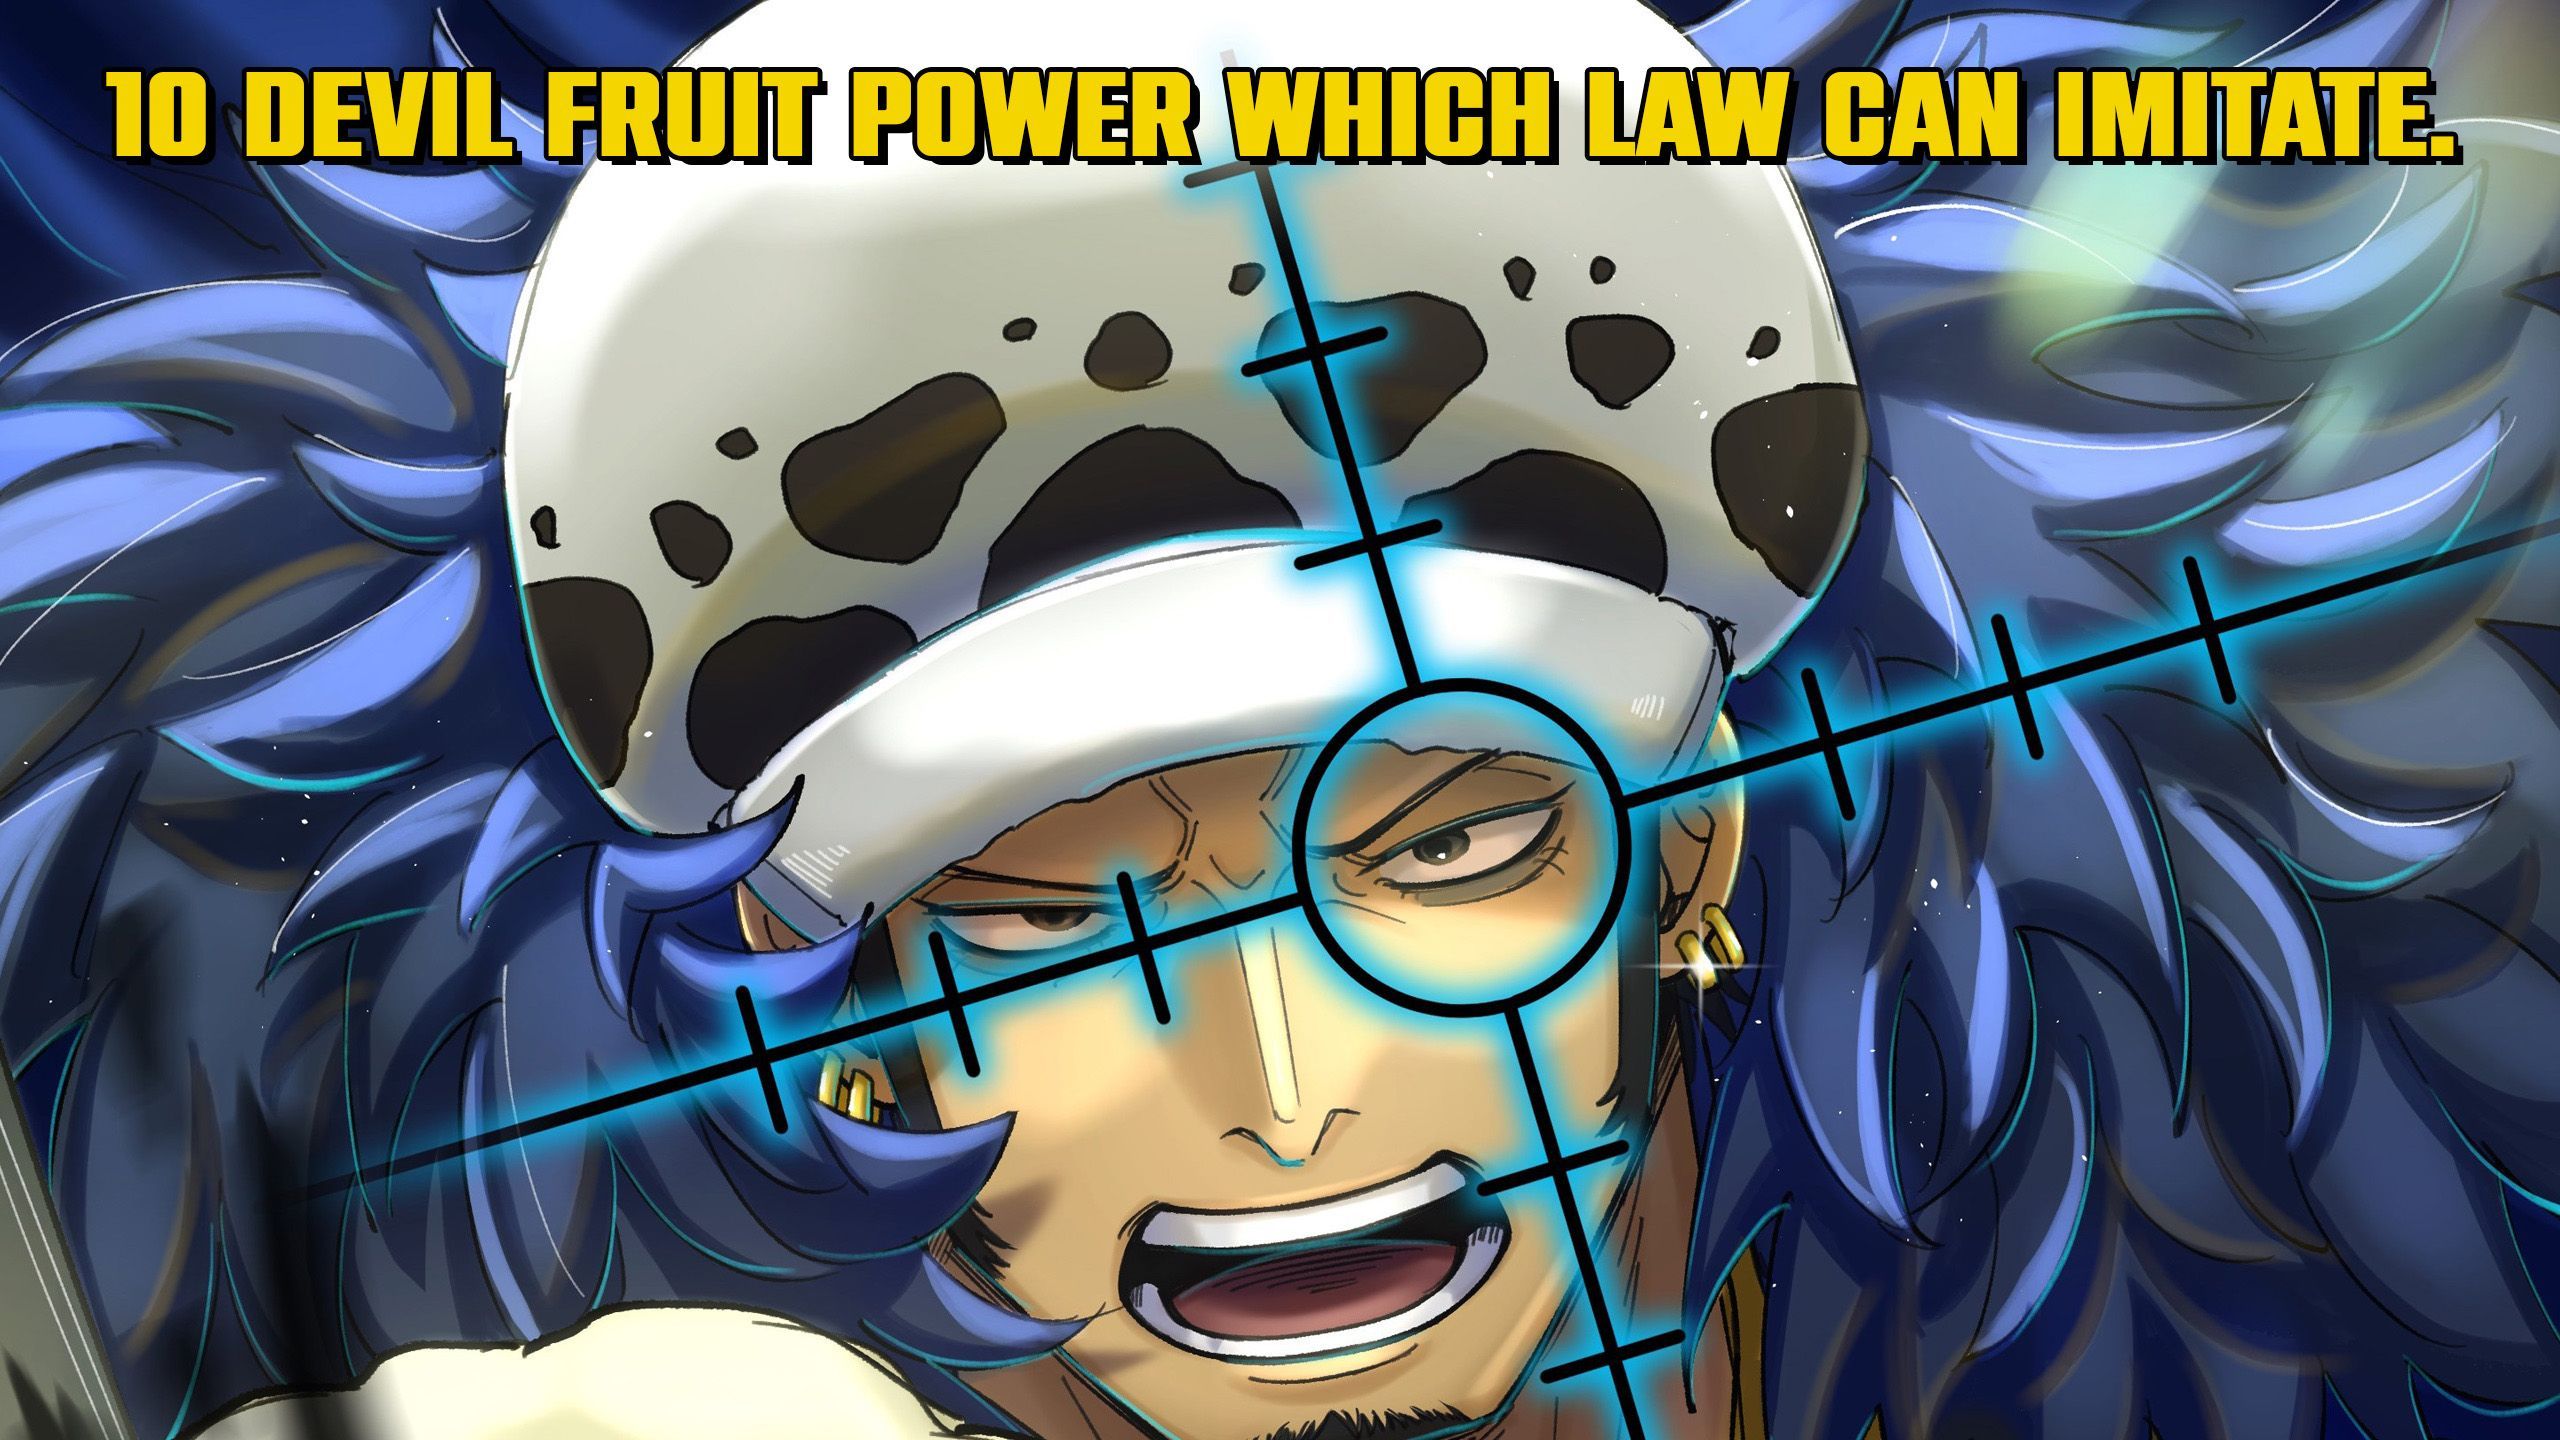 Law's Devil Fruit Awakening Explained